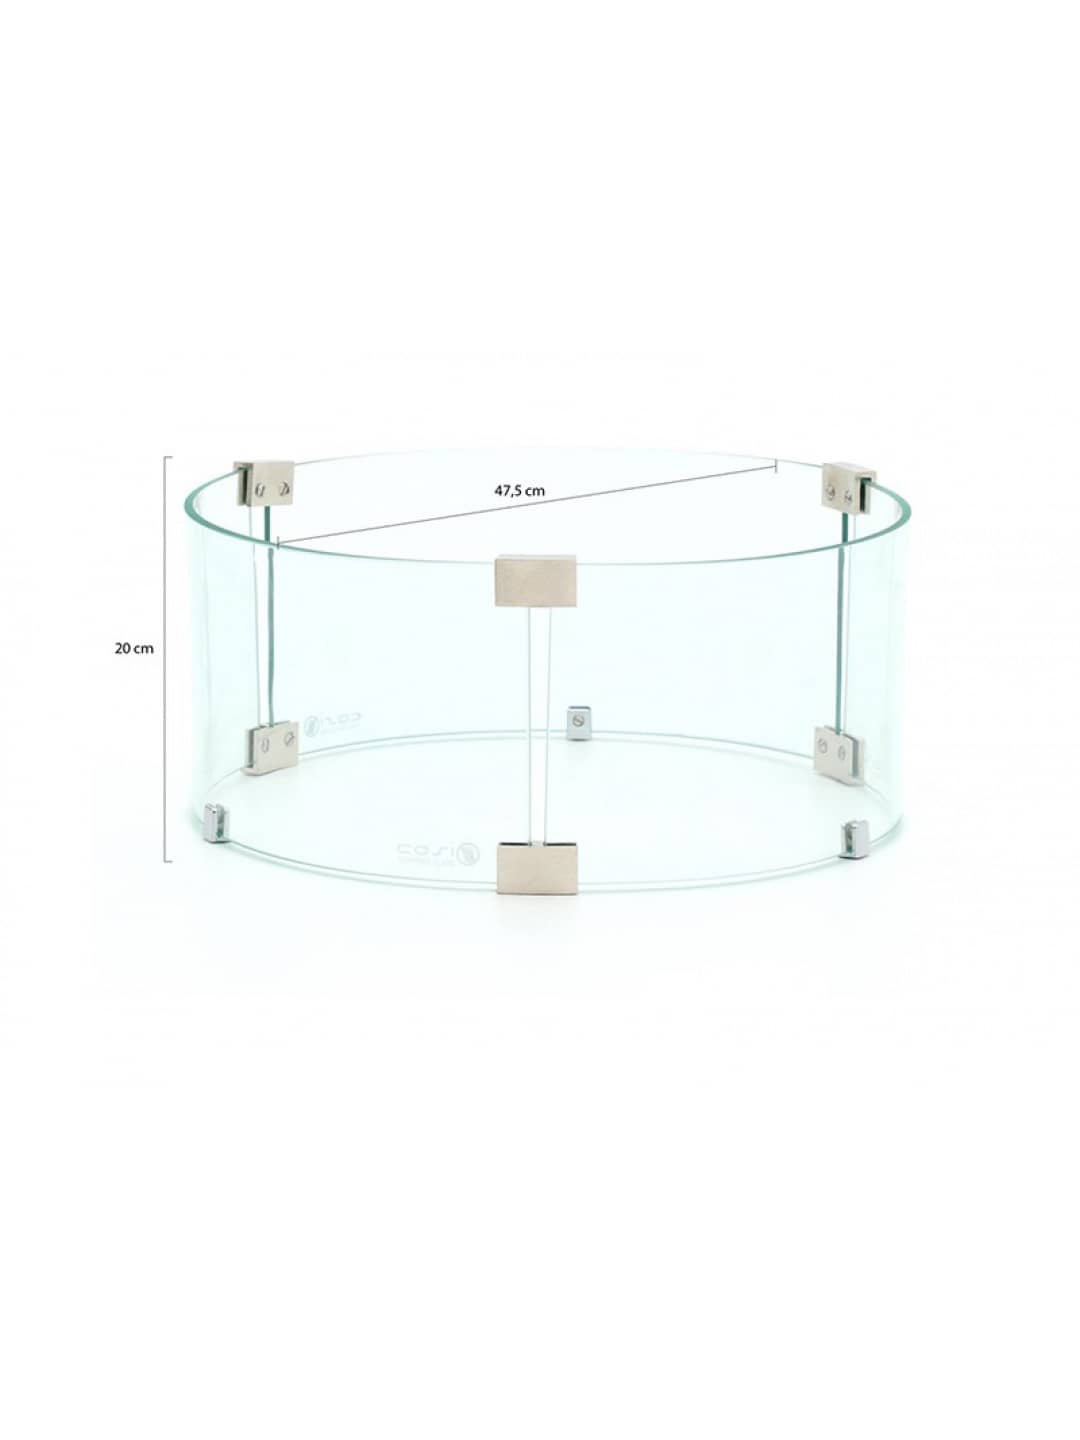 Размеры защитного стекла Cosi round glass set L